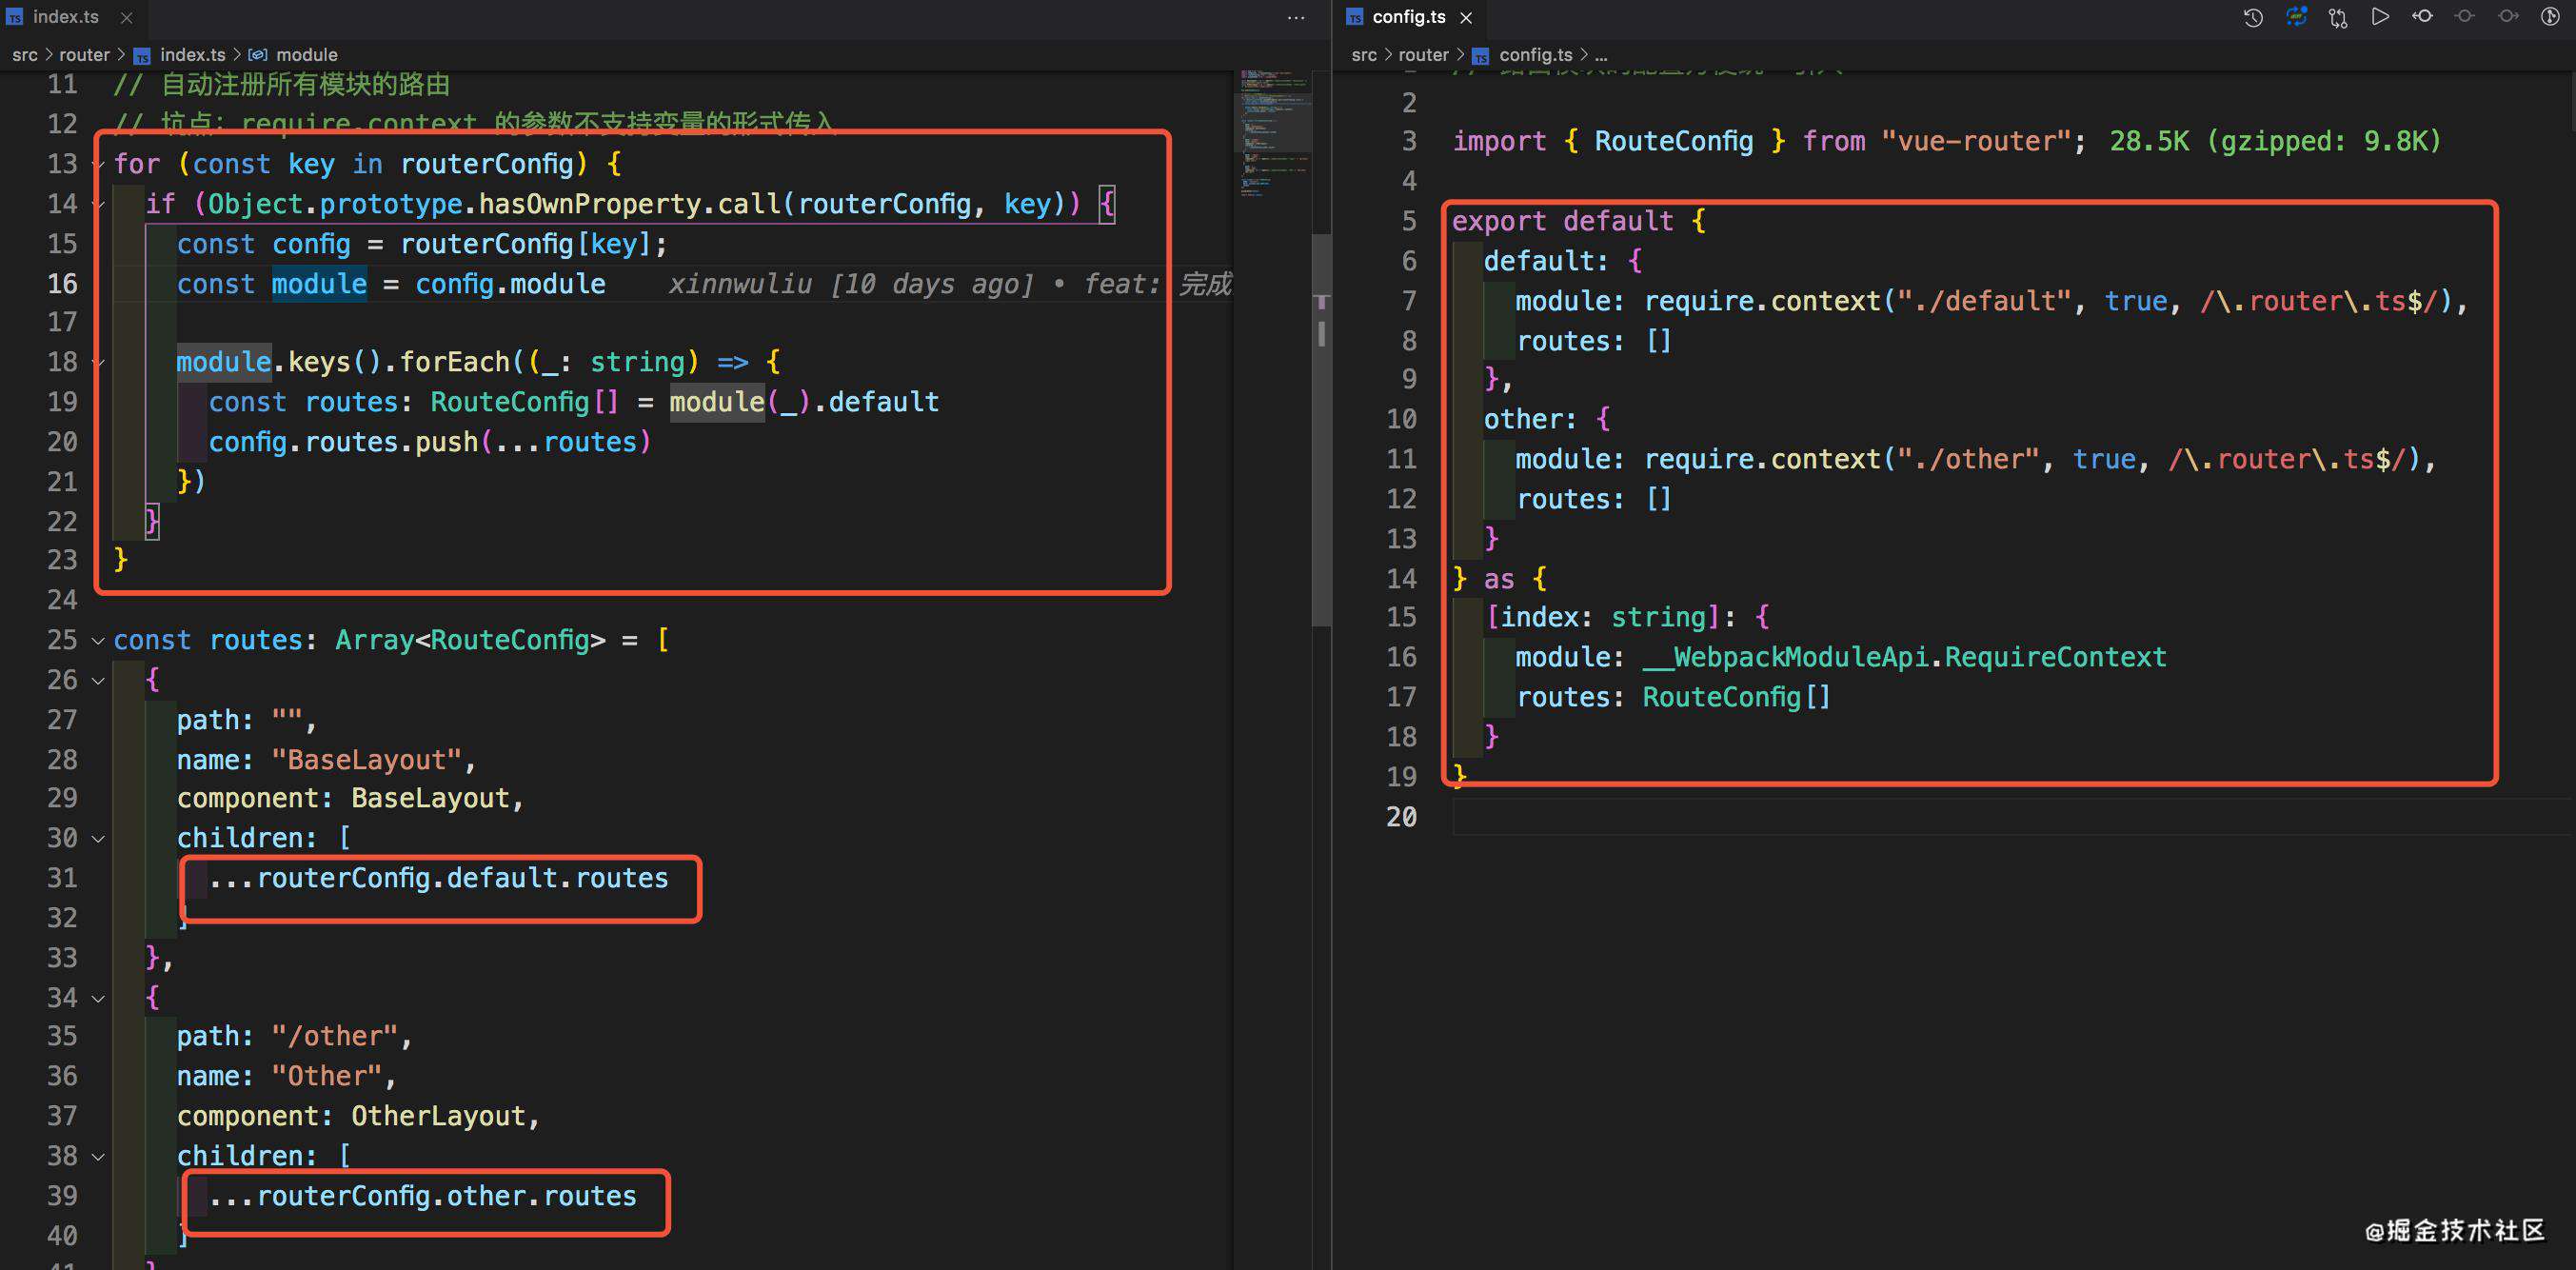 Vue + TypeScript + Element-ui + Axios 搭建前端项目基础框架